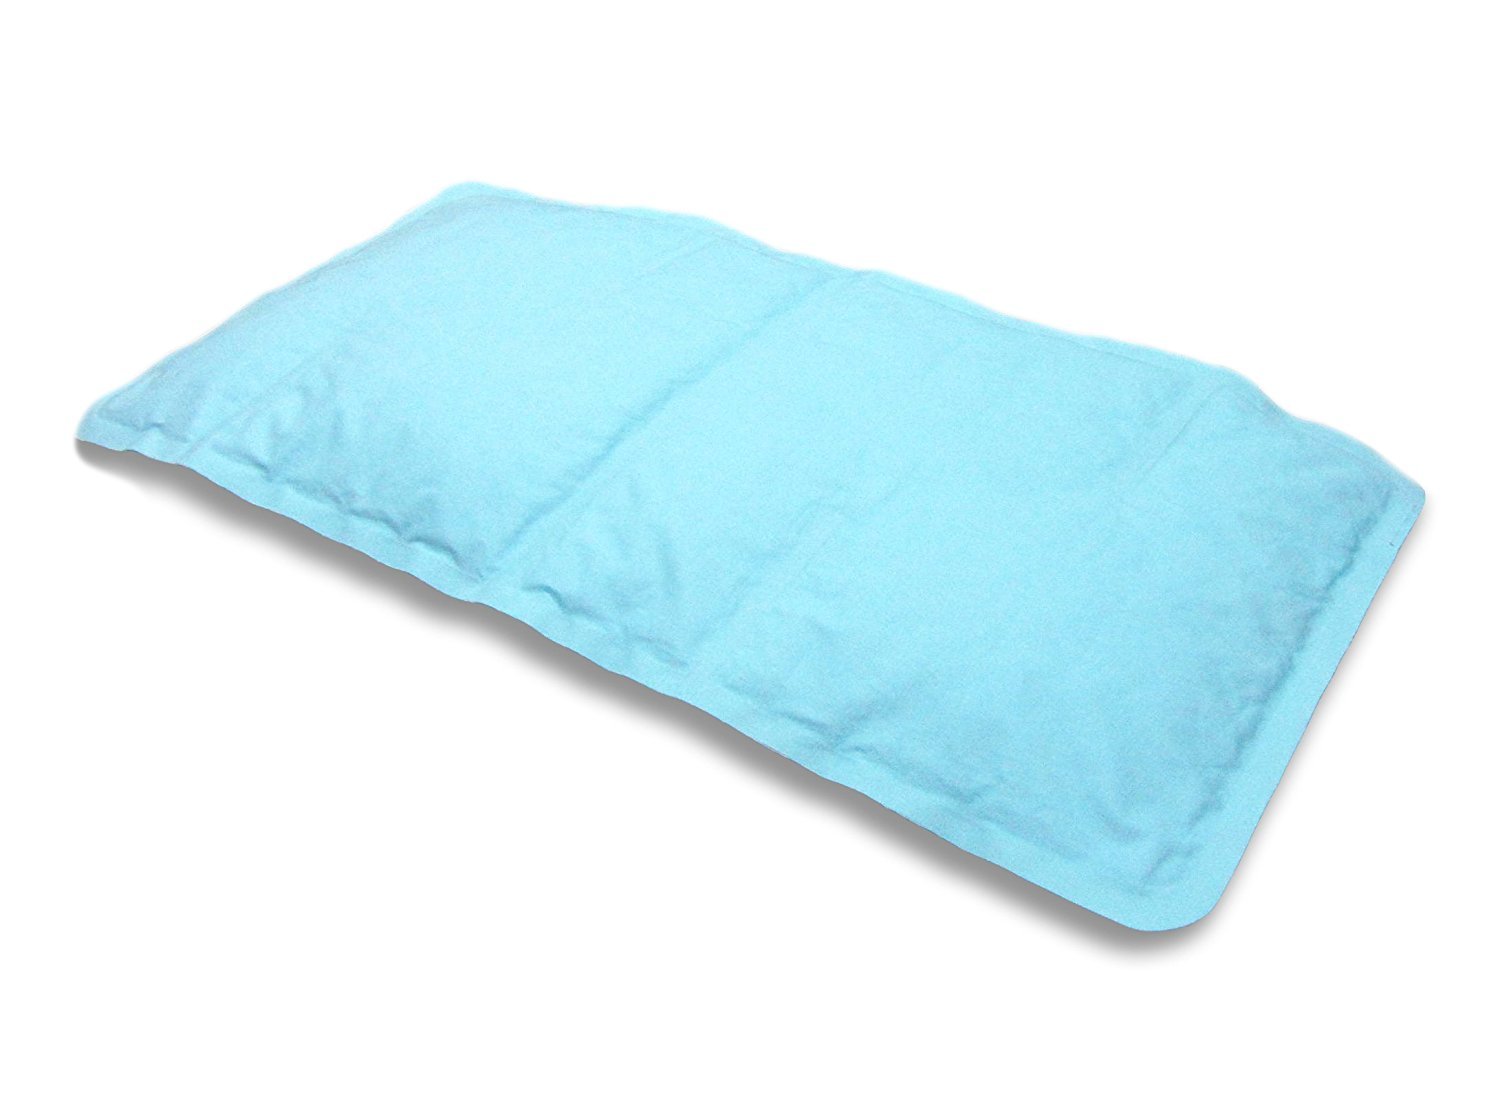 gel'o cooling pillow mat